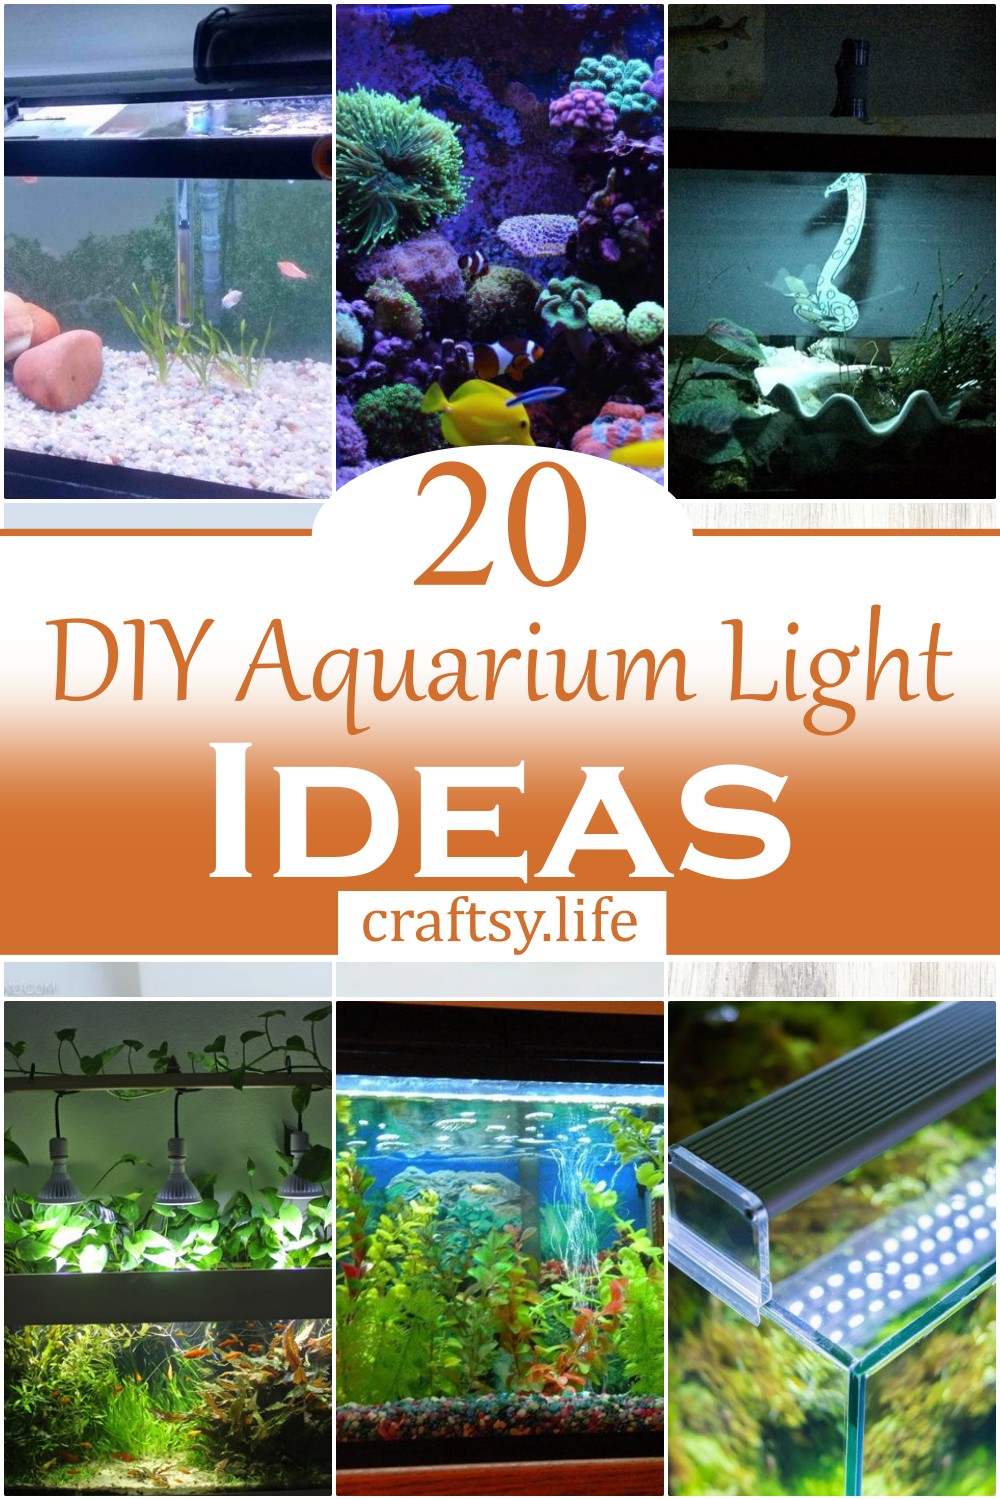 DIY Aquarium Light Ideas